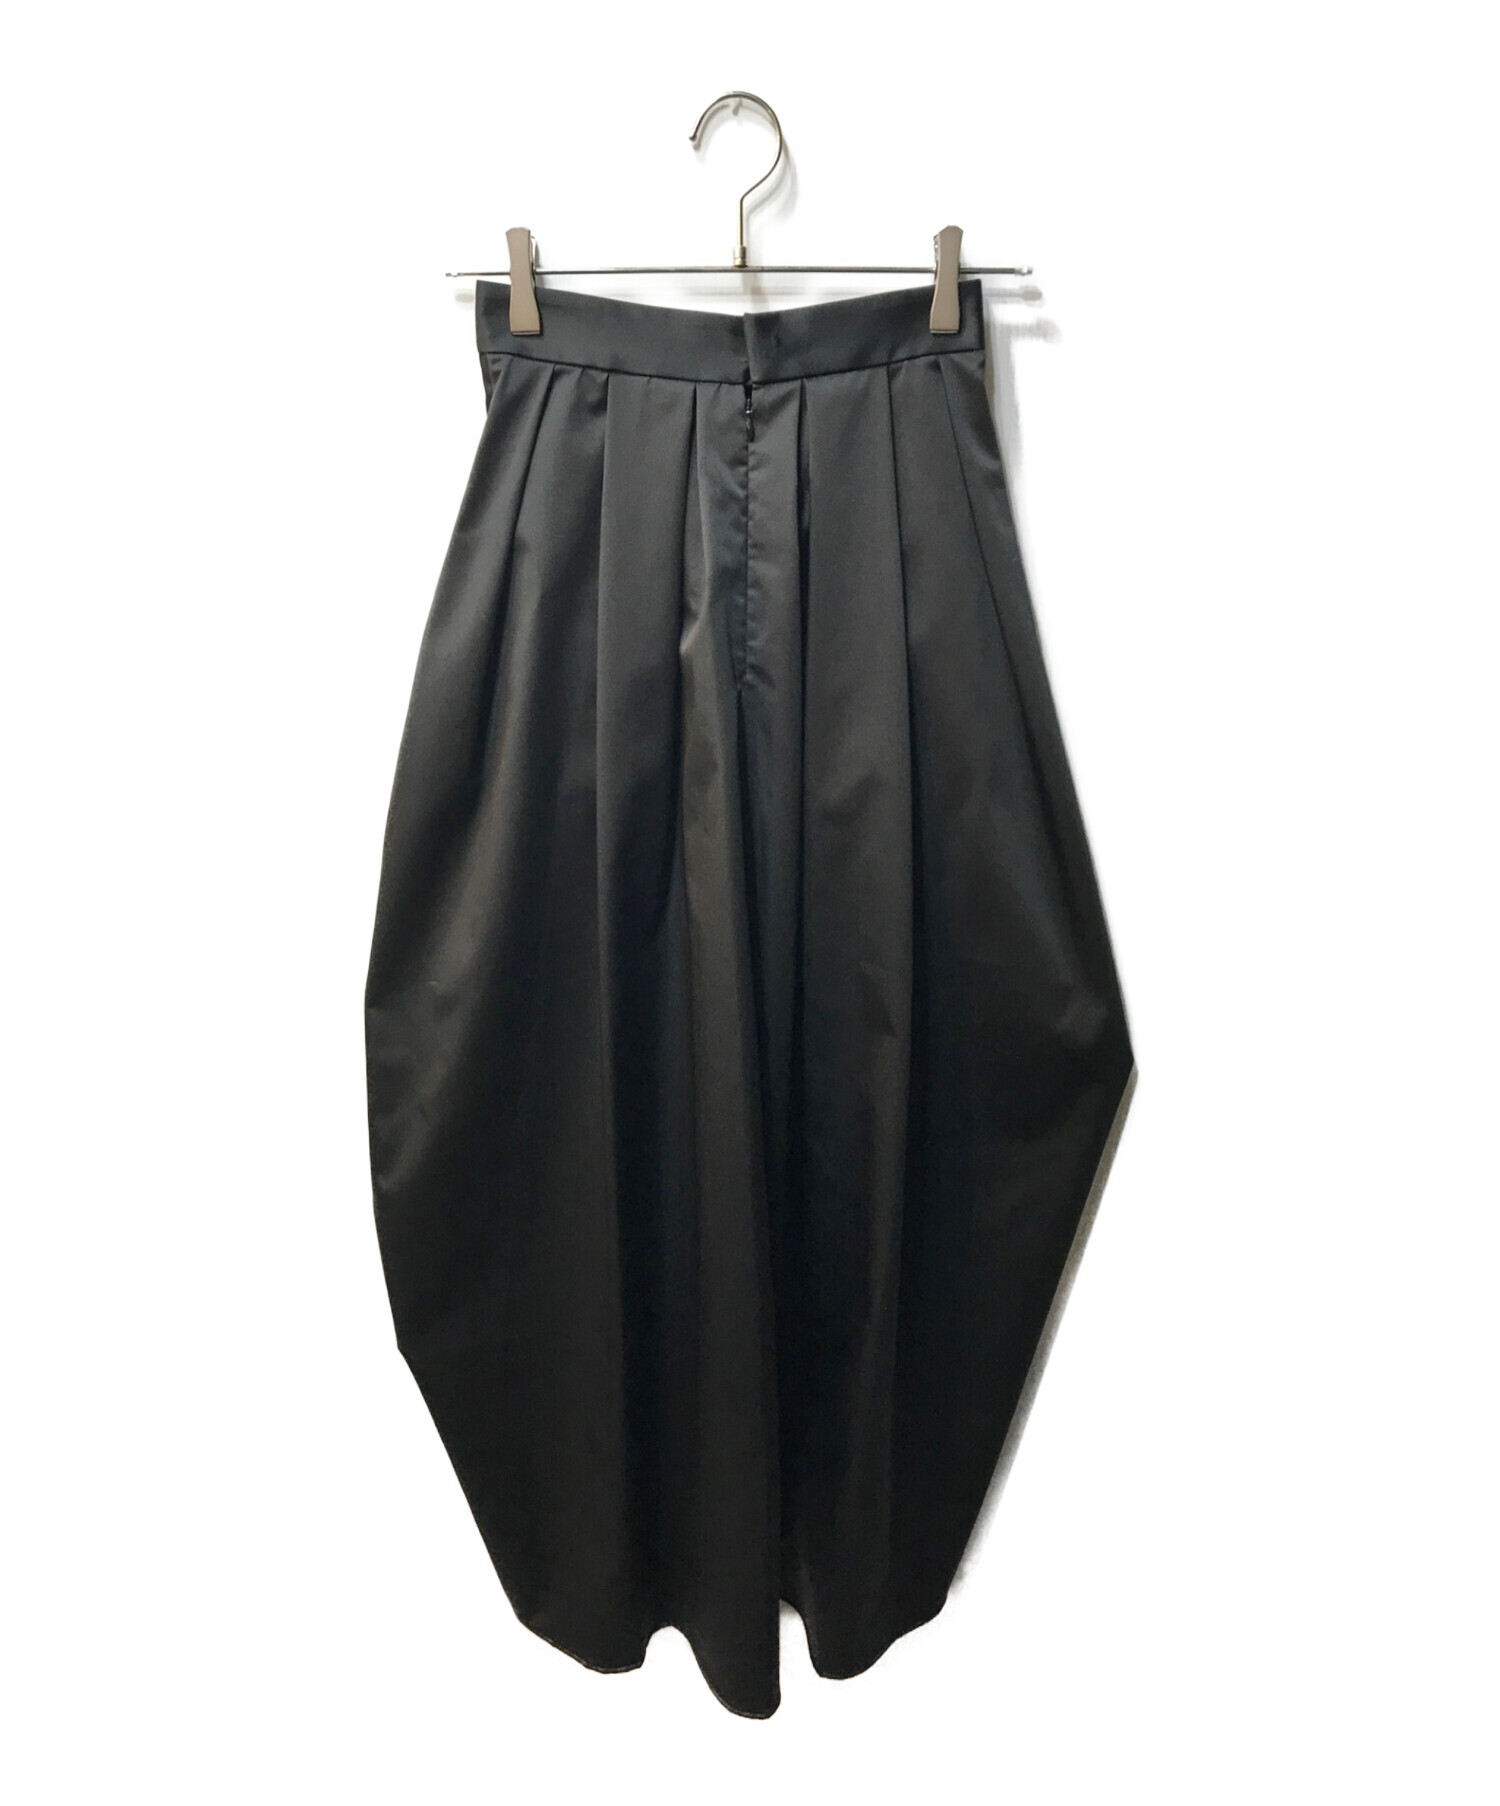 11,960円【美品】Louren design taffeta skirt